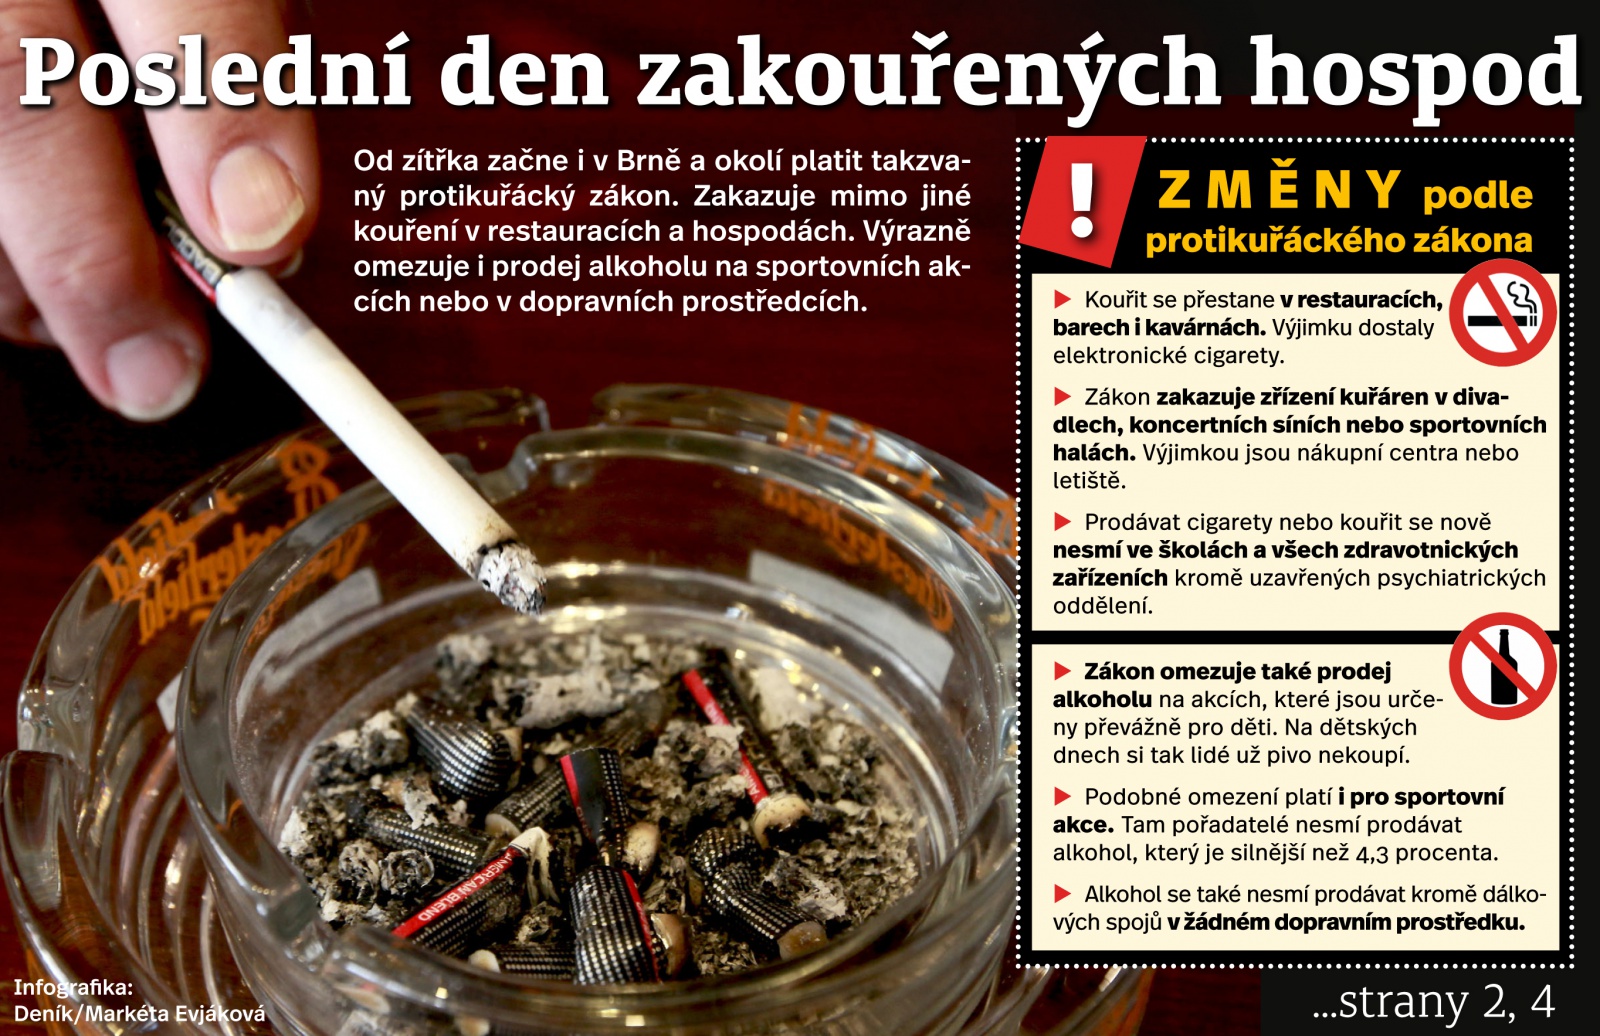 Poslední den kouření v hospodách: Kuřáci mi říkali, že chodit nebudou,  tvrdí muž - Blanenský deník